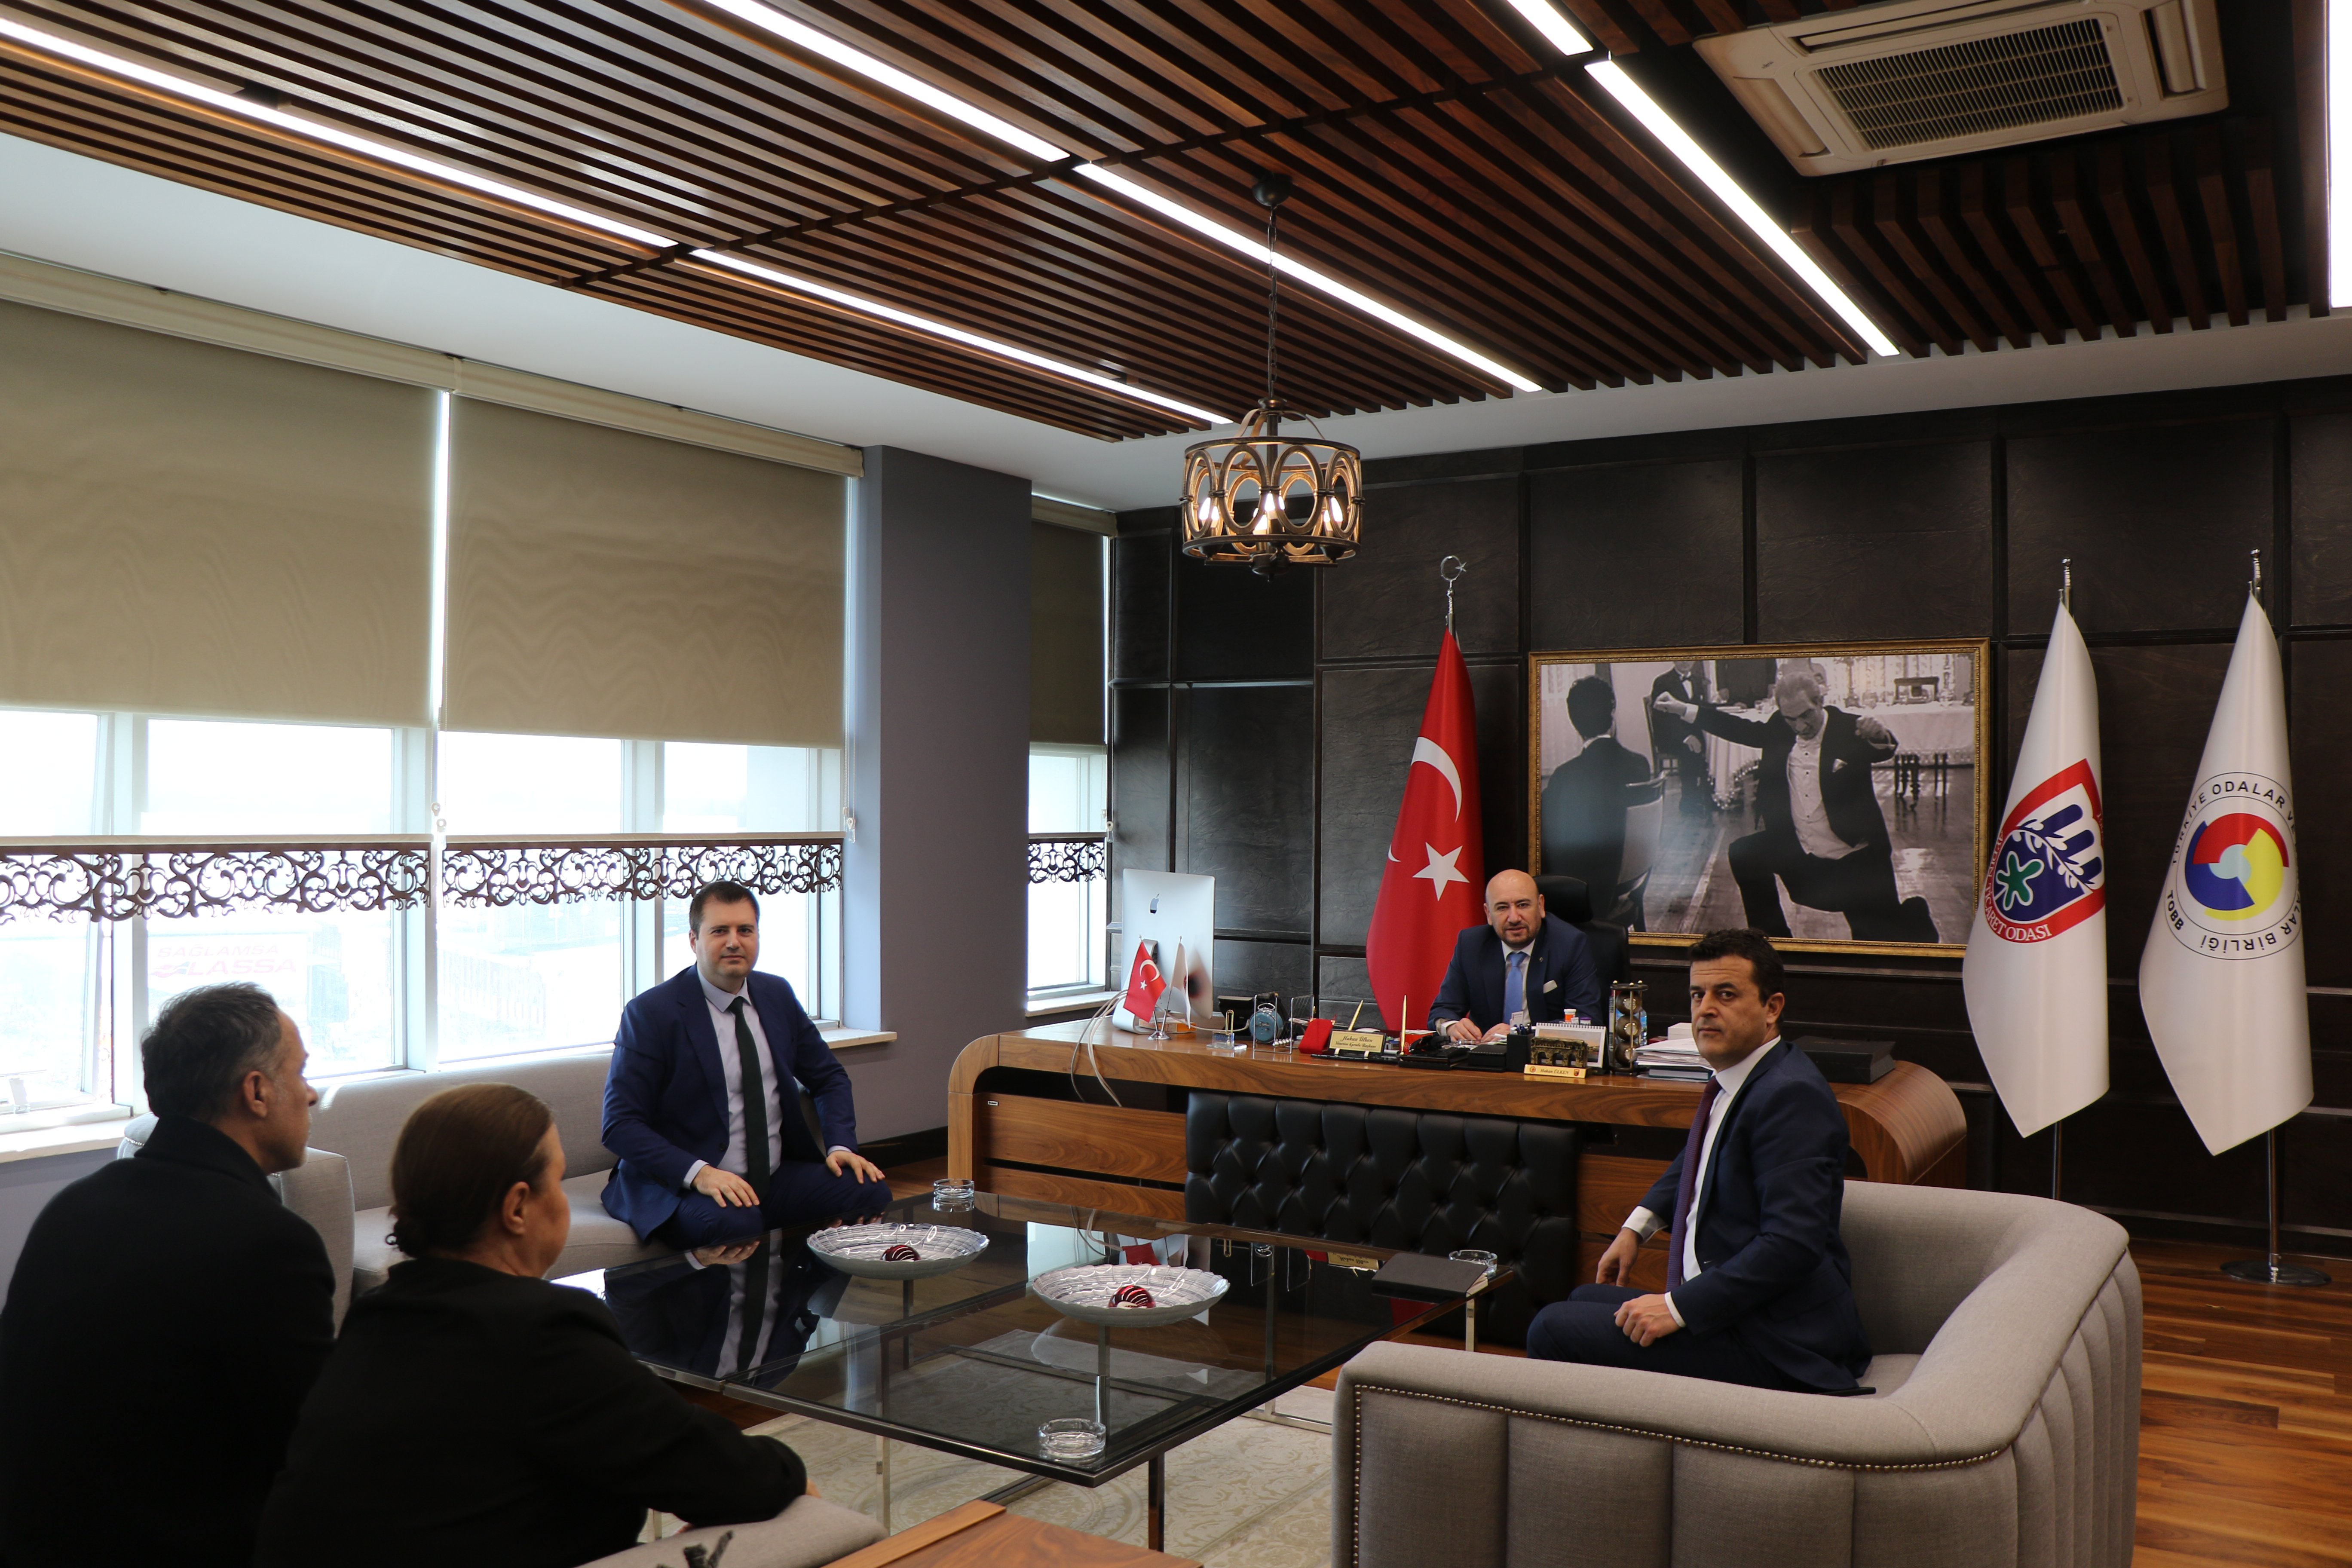 Aydın Ziraat Bankası Ticari Şube Müdürü Yusuf ERDEM, TOBB Yönetim Kurulu Üyesi ve Odamız Başkanı Hakan ÜLKEN’ i makamında ziyaret etti.